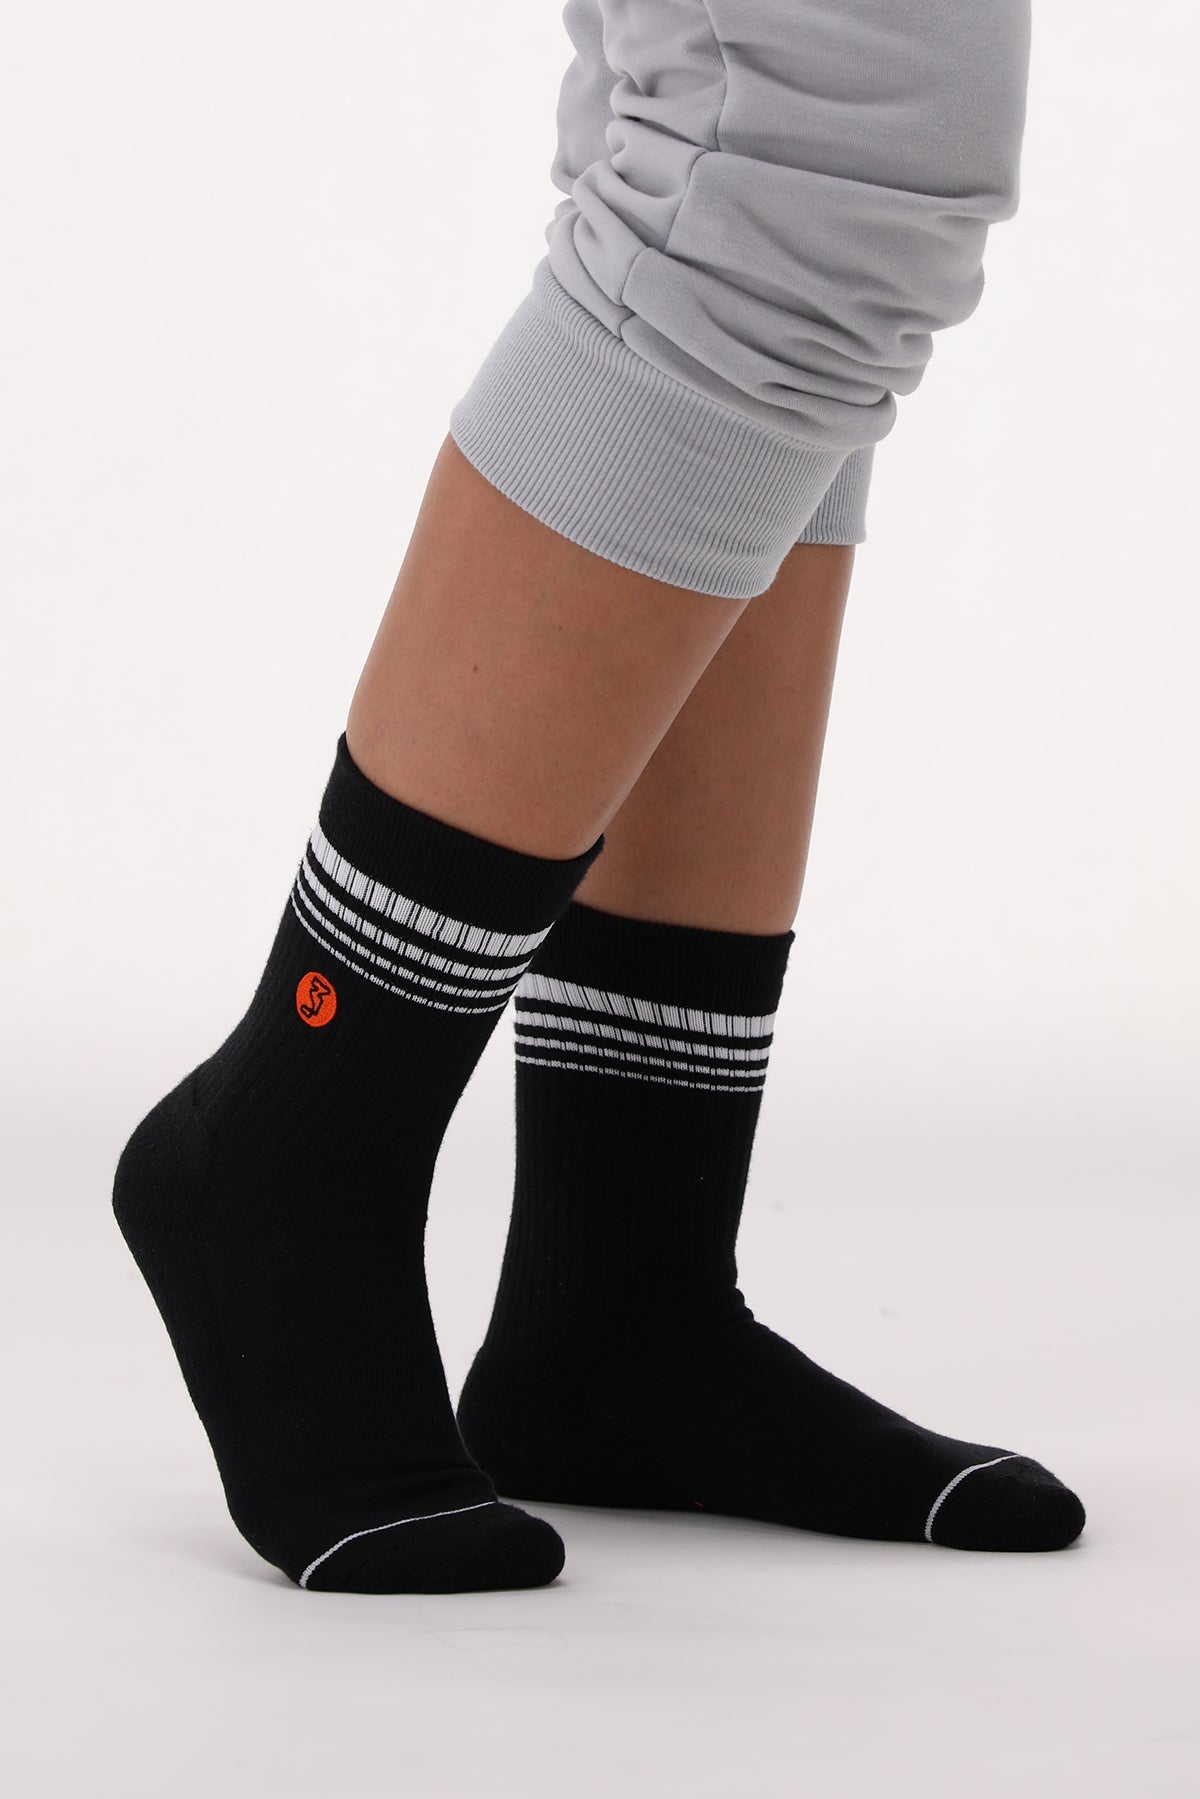 Socks 6 - Black + White